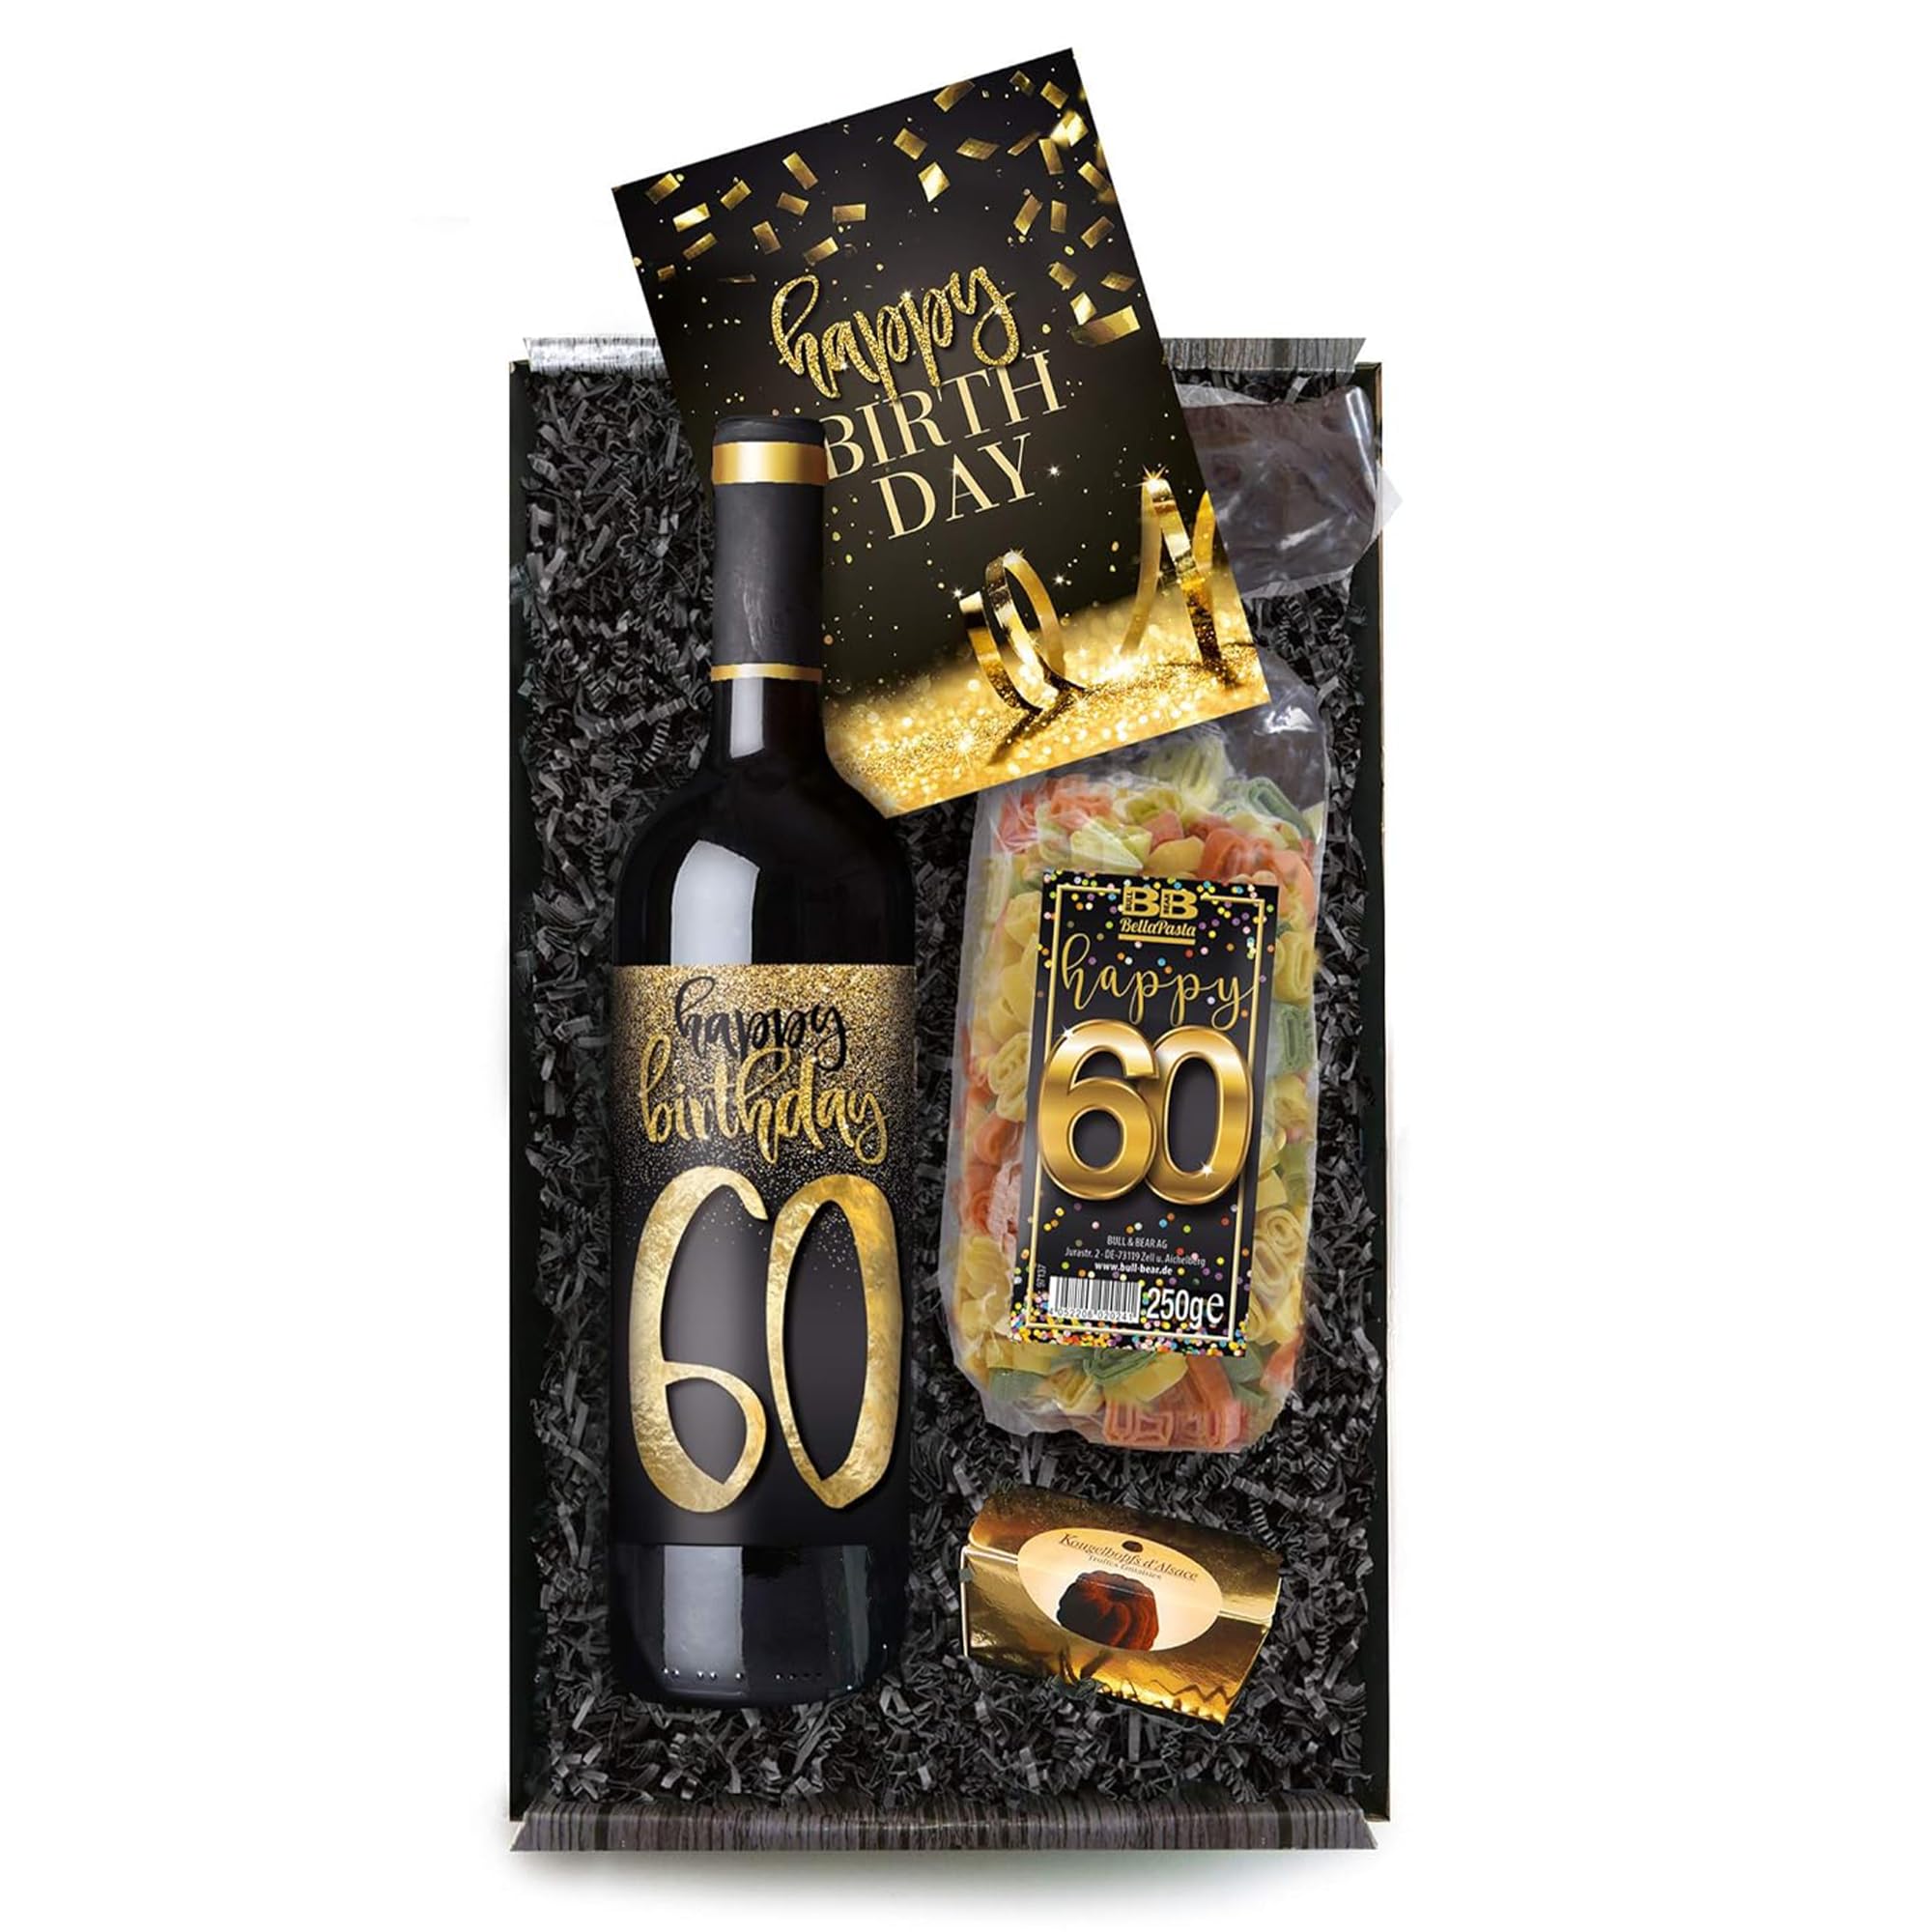 Bull & Bear Geschenkbox "Happy Birthday 60", Set mit Rotwein und Geburtstagskarte, Geschenk zum 60. Geburtstag